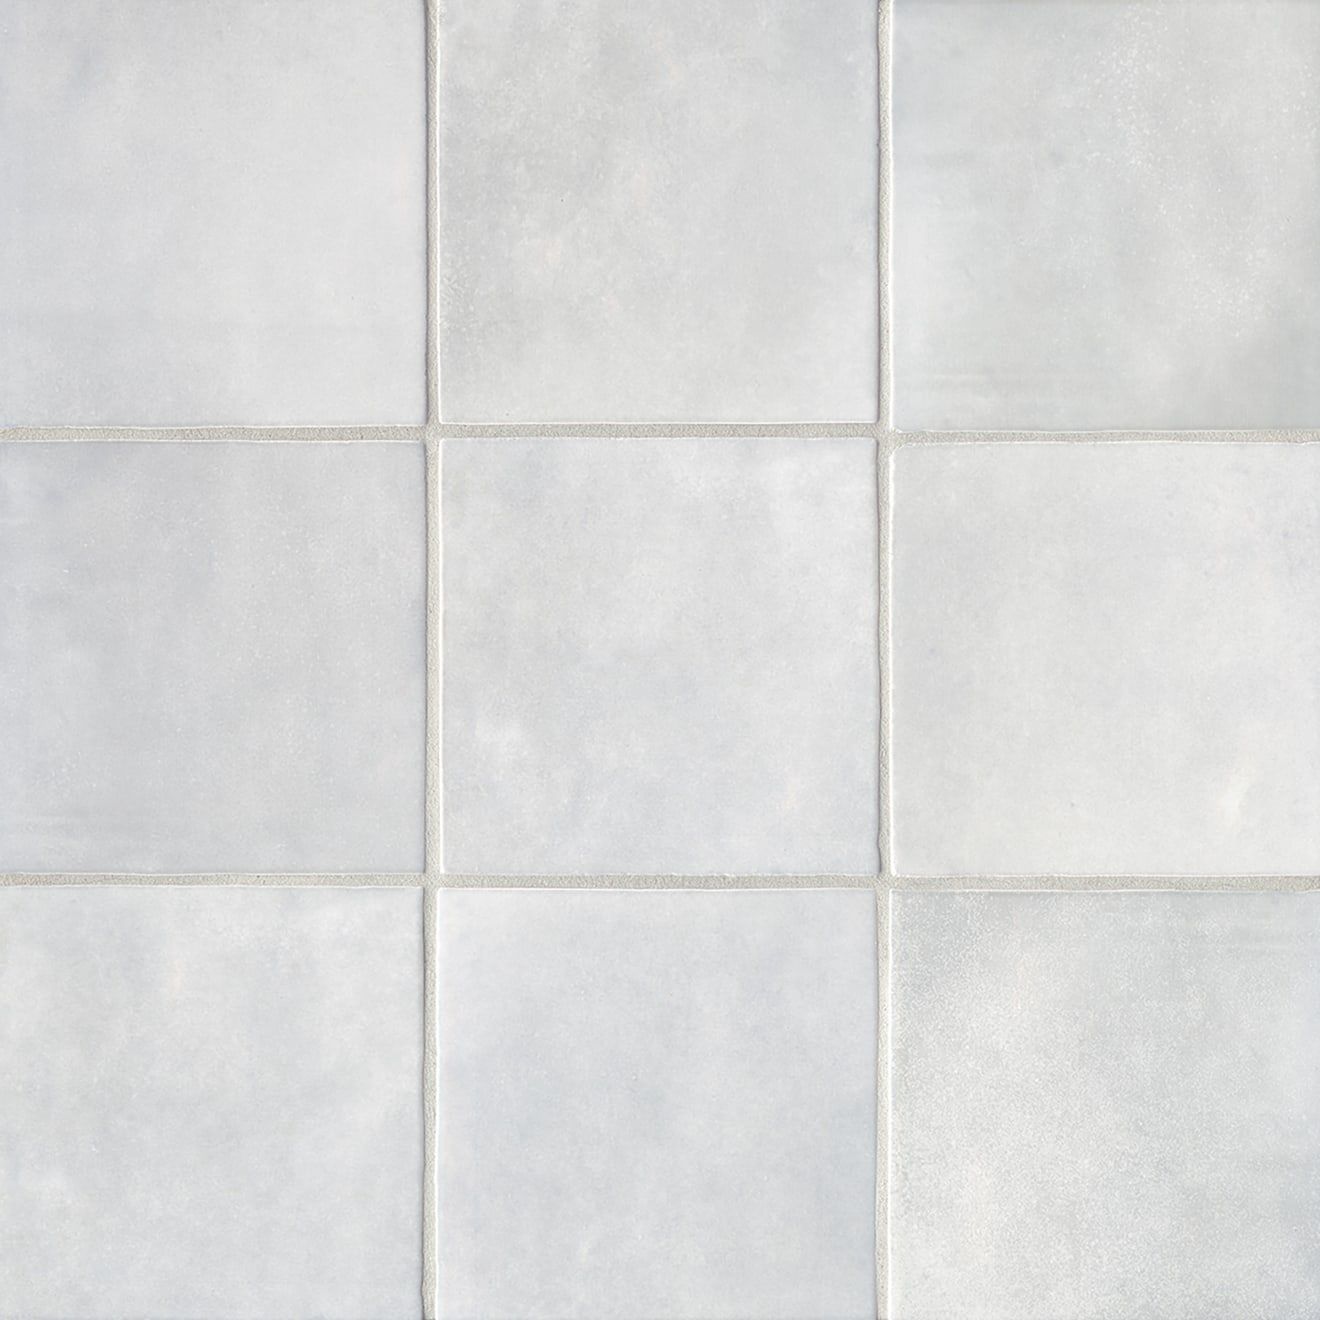 Cloe 5" x 5" Ceramic Tile in Grey | Bedrosians Tile & Stone